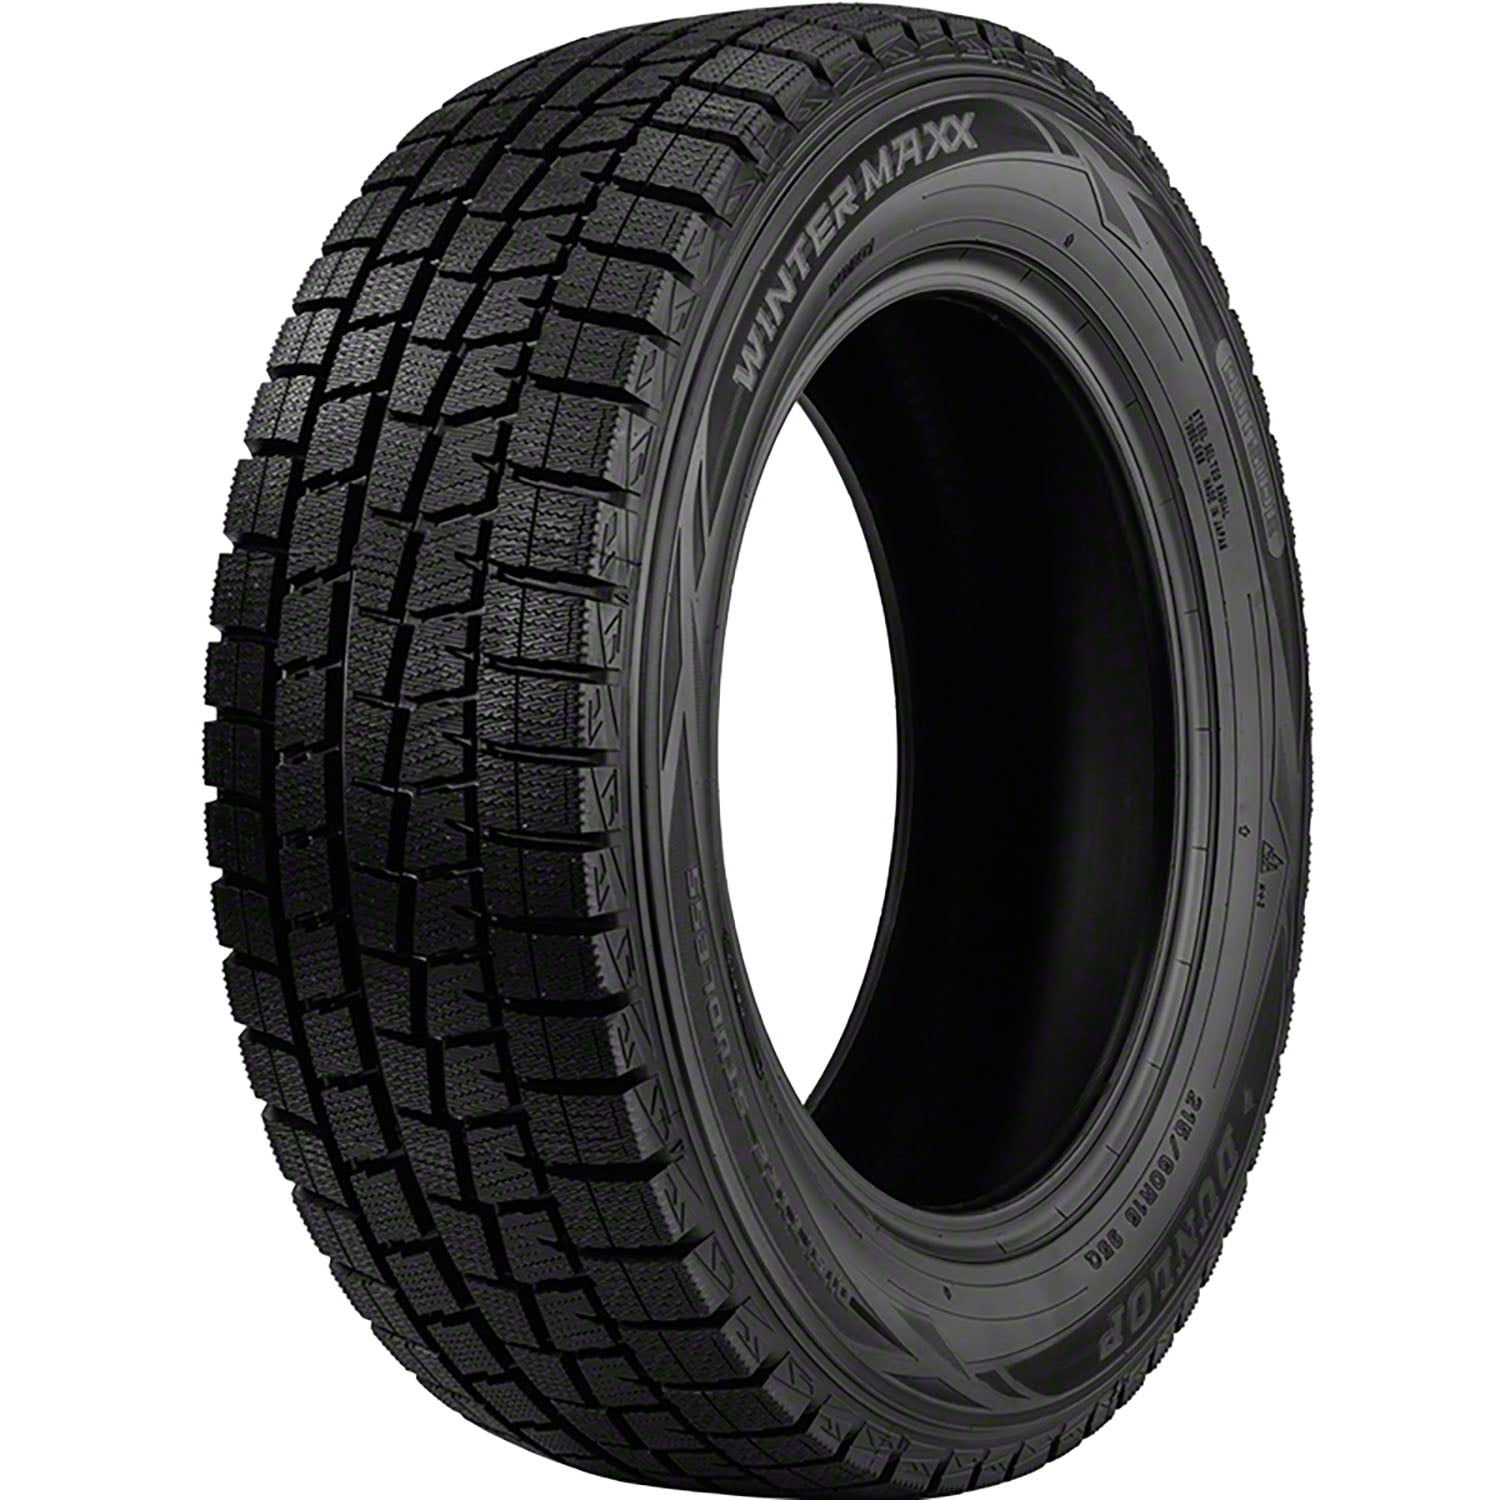 Dunlop Winter Maxx Winter 205/65R16 95T Passenger Tire